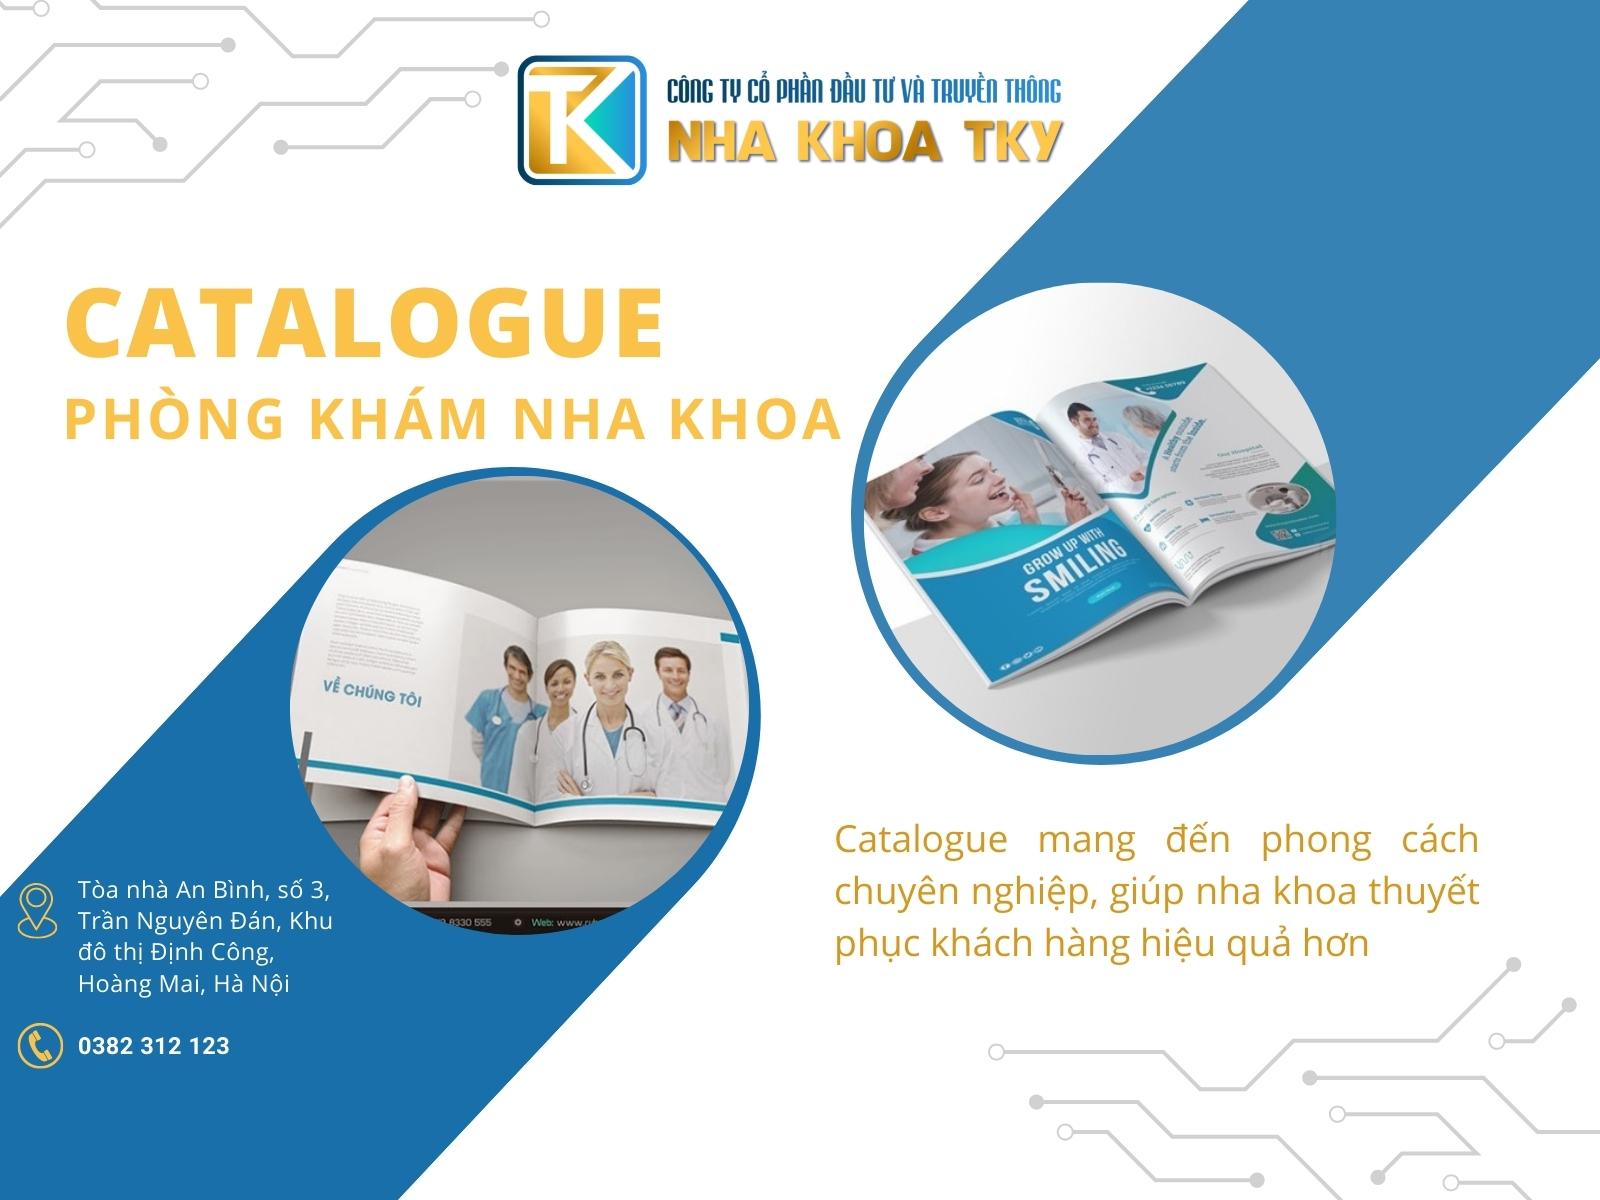 Nha khoa cần có Catalogue để cung cấp thông tin và hình ảnh cho khách hàng